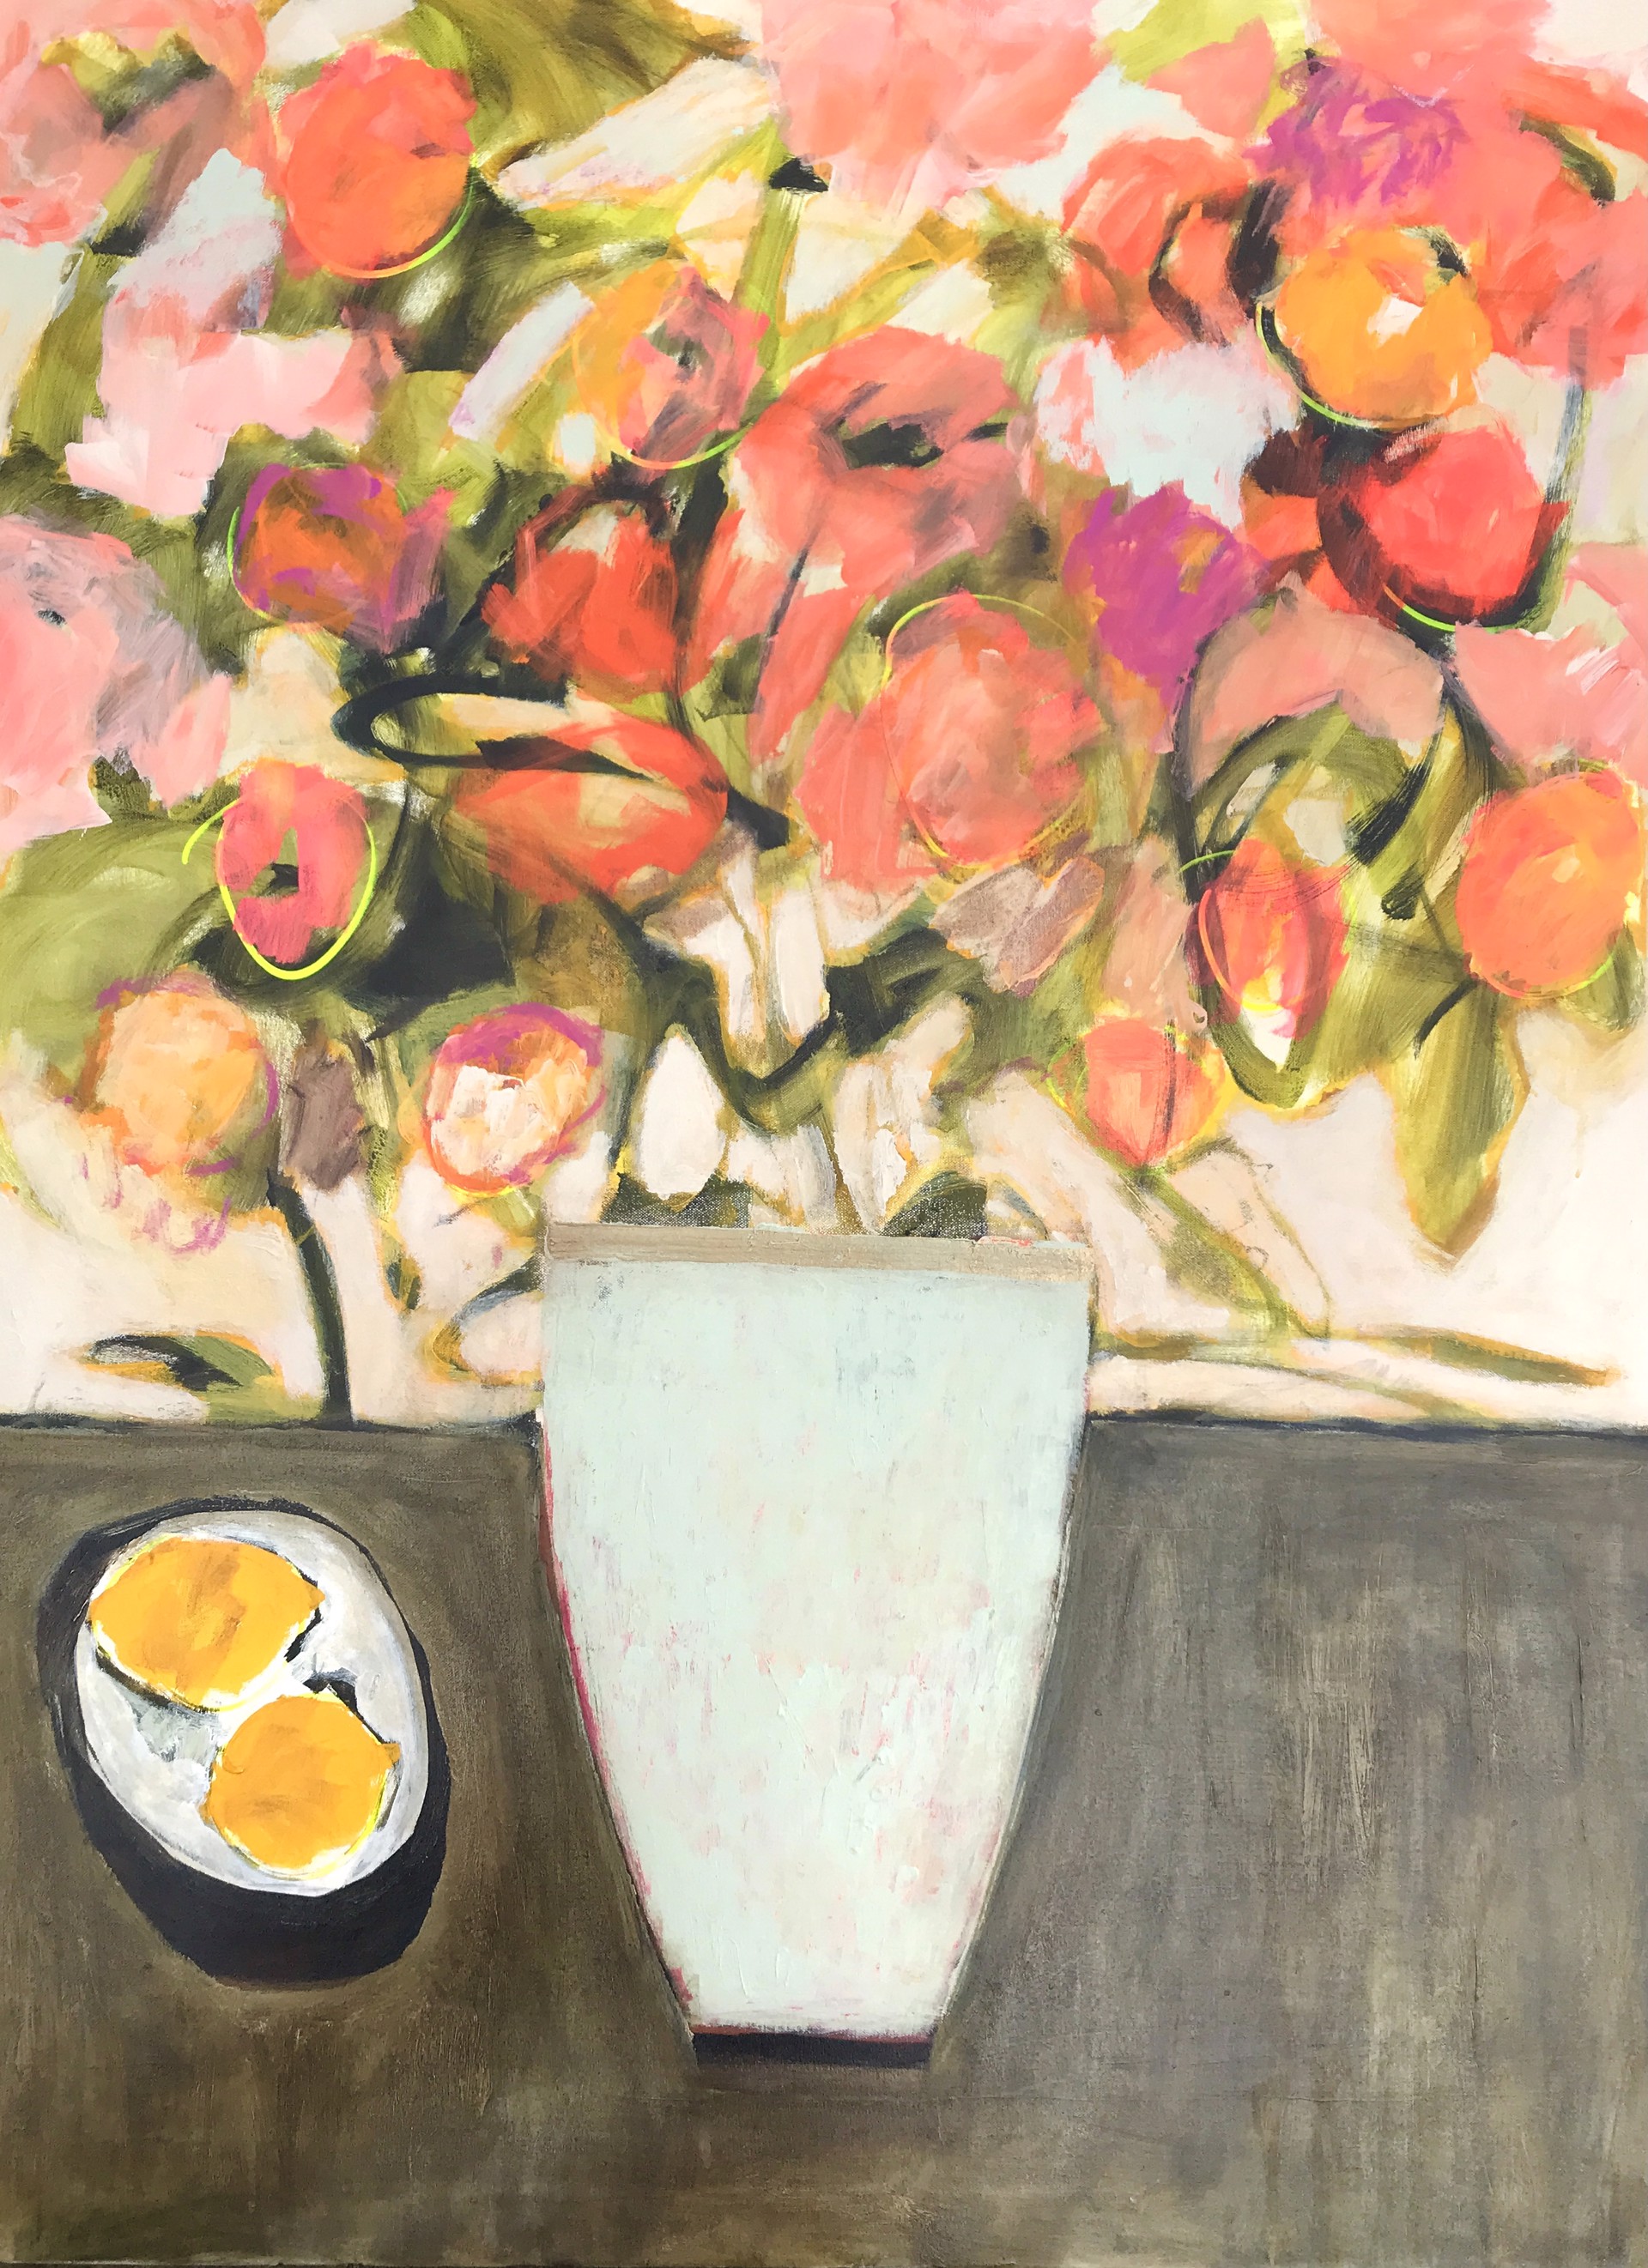 Zinnias with Plate of Lemons by Rachael Van Dyke